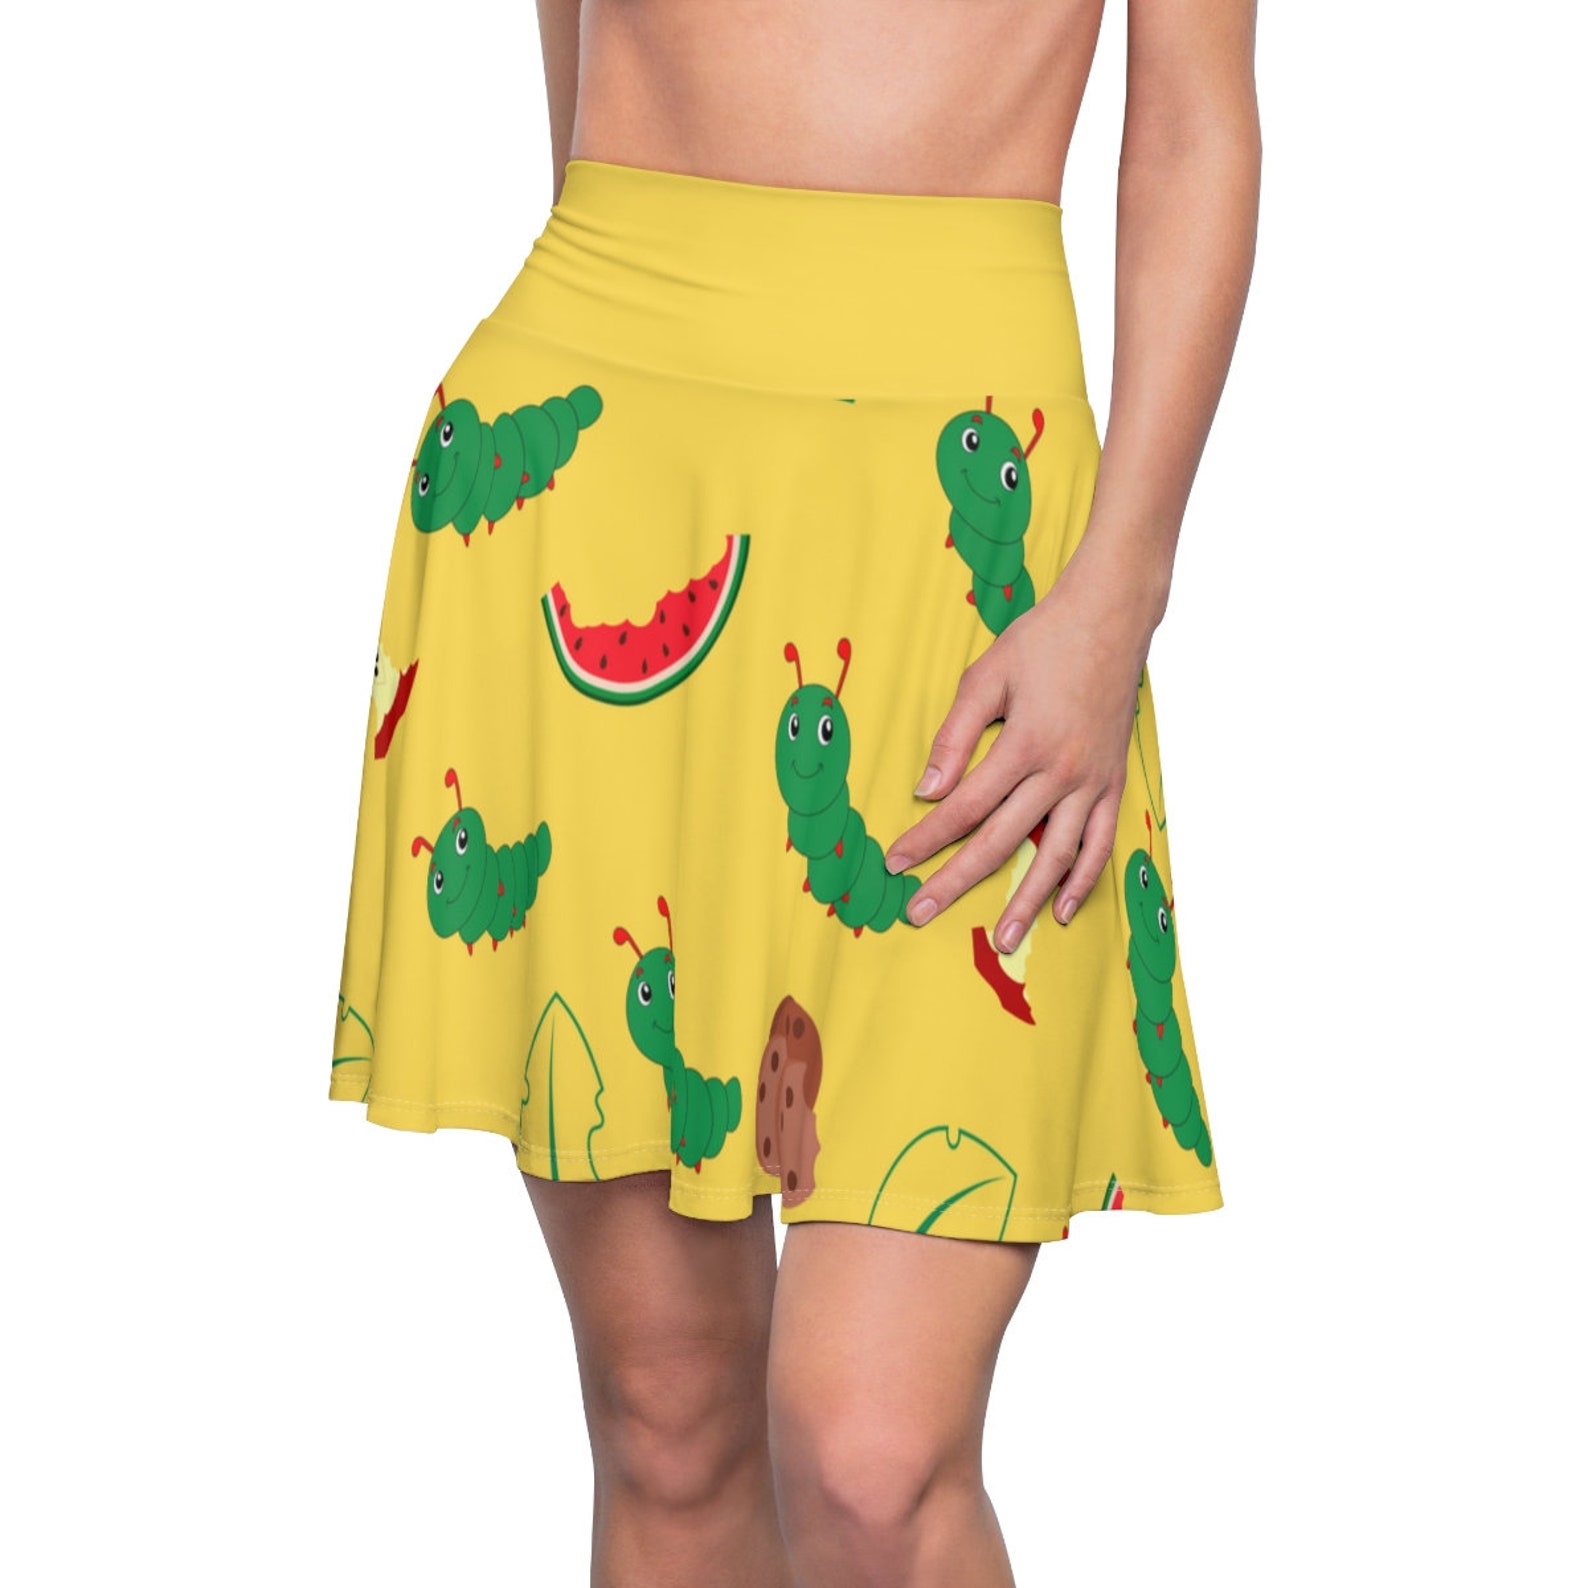 The Very Hungry Caterpillar Skirt Teacher Dress-up Book - Etsy